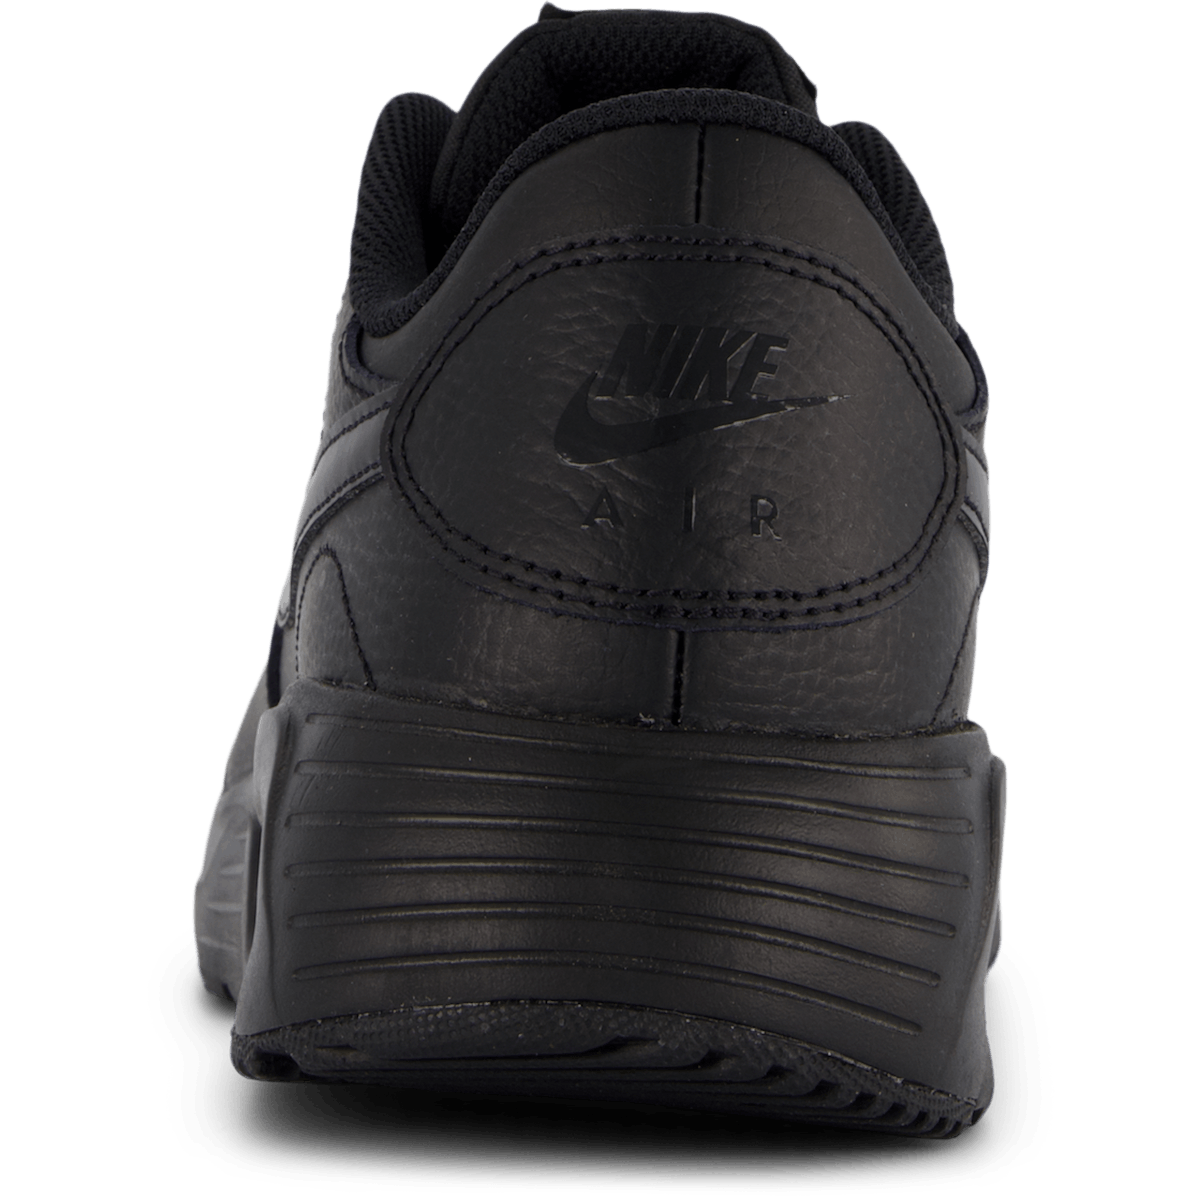 Air Max SC Leather Men's Shoes BLACK/BLACK-BLACK